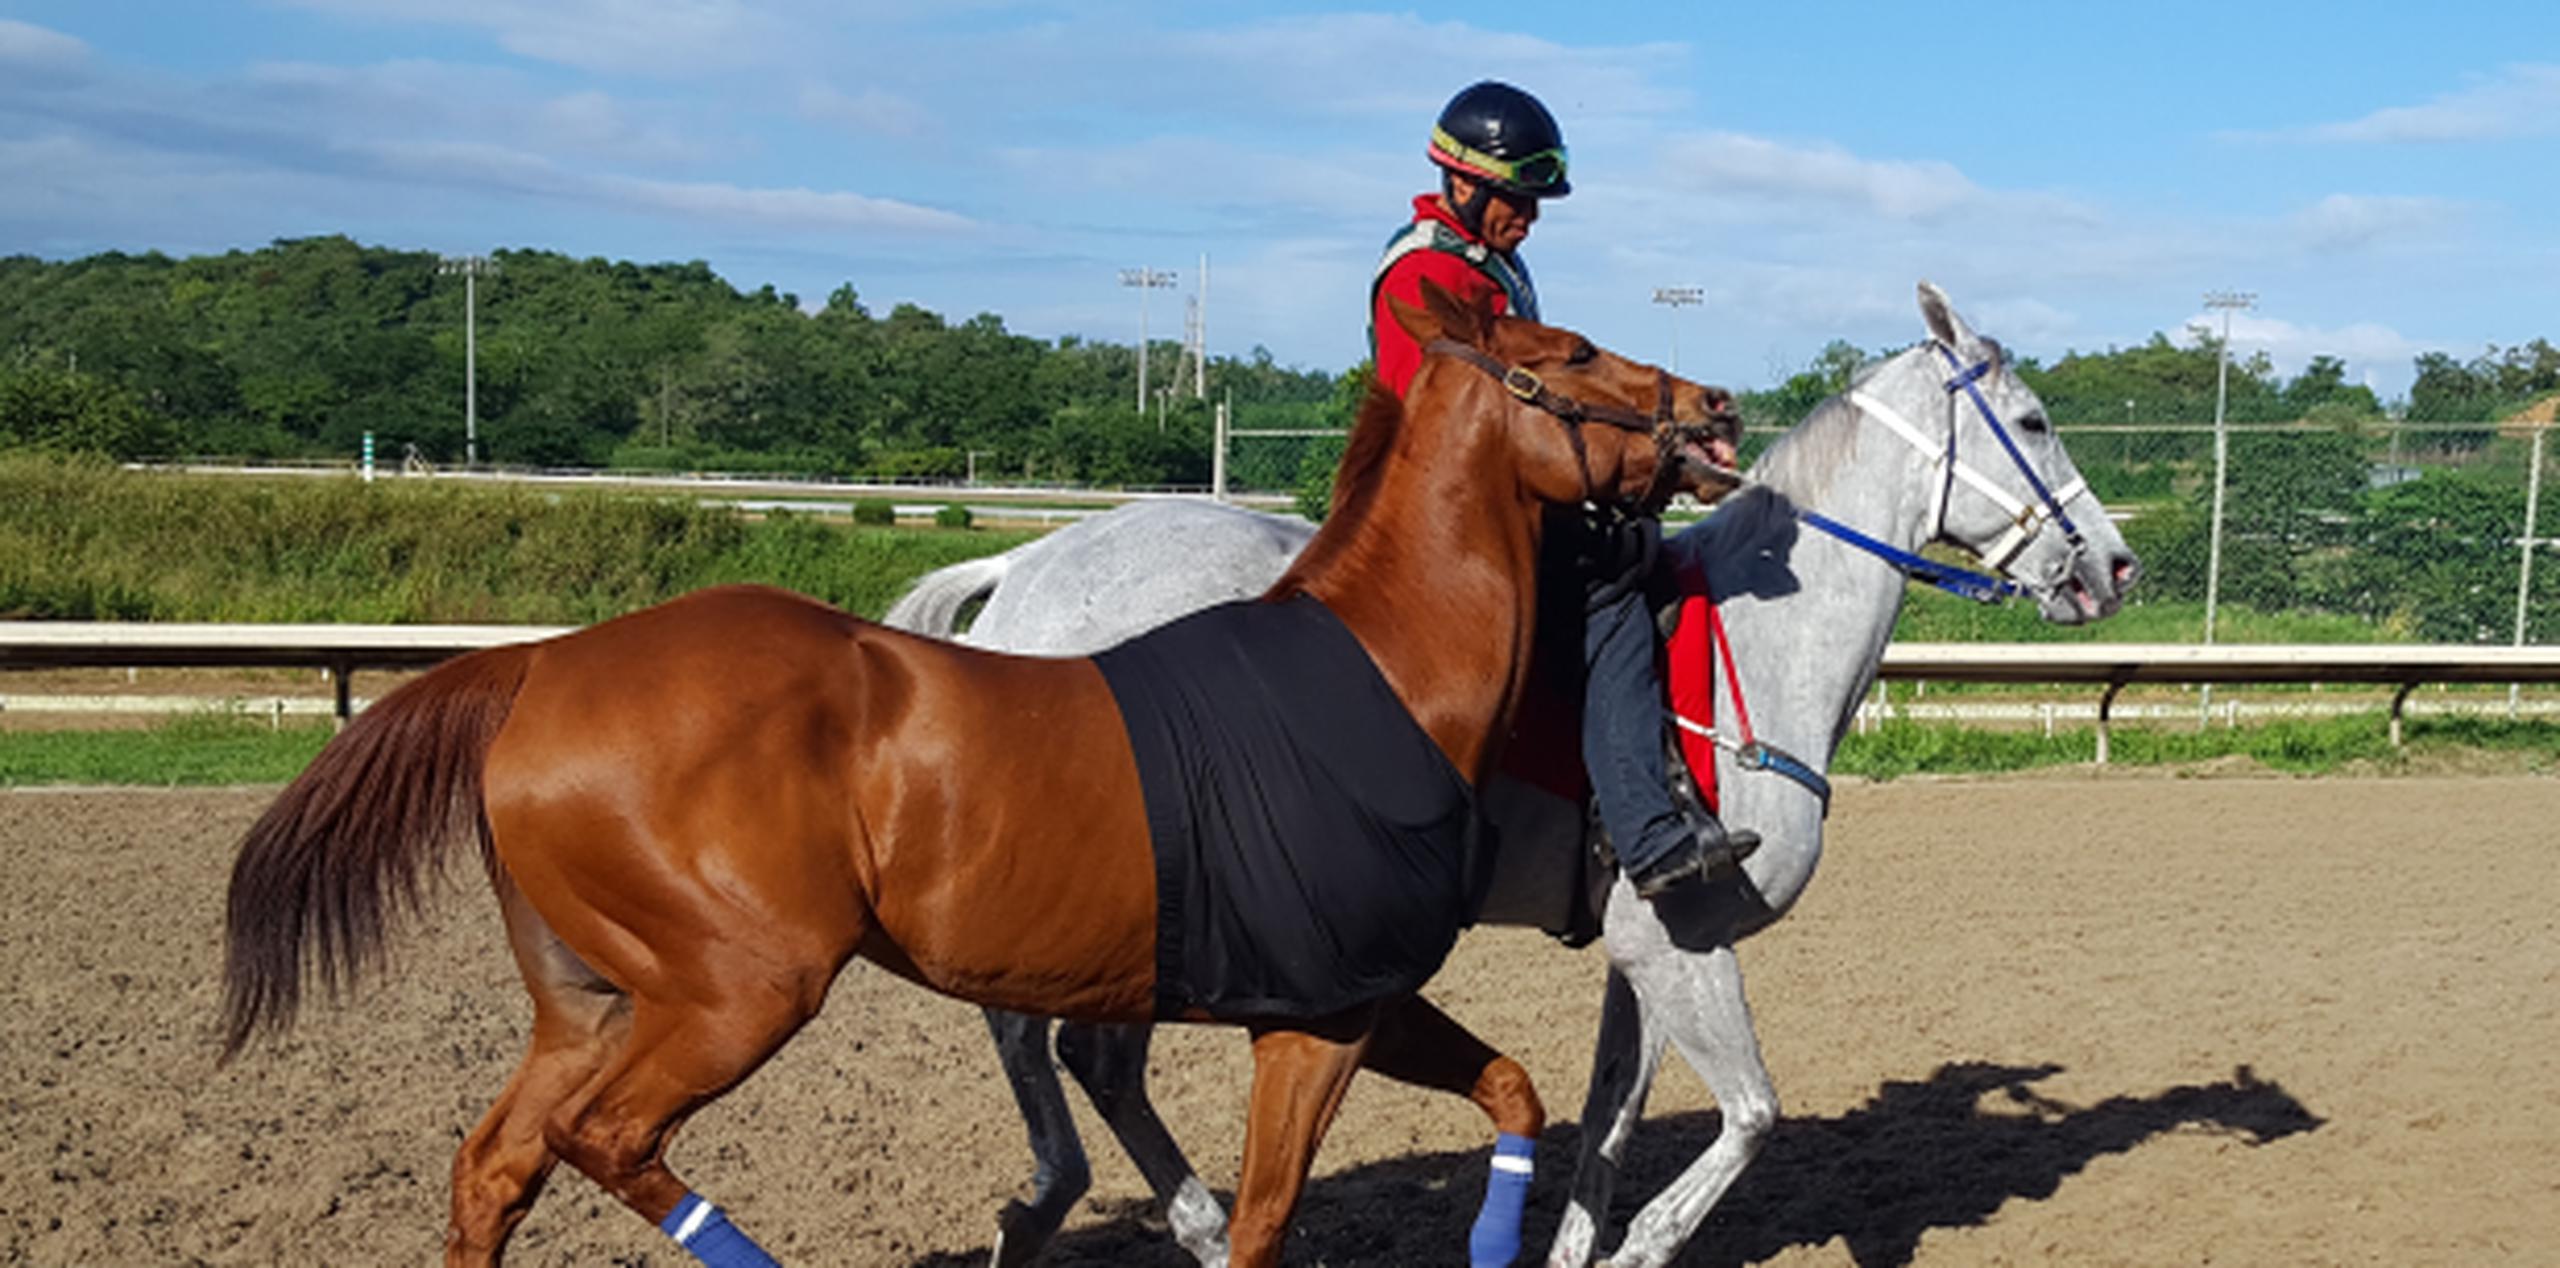 Don Carlos R. galopa junto a un pony en la pista del hipódromo Camarero como parte de su recuperación para una posible participación en la Copa Confraternidad. (Suministrada)